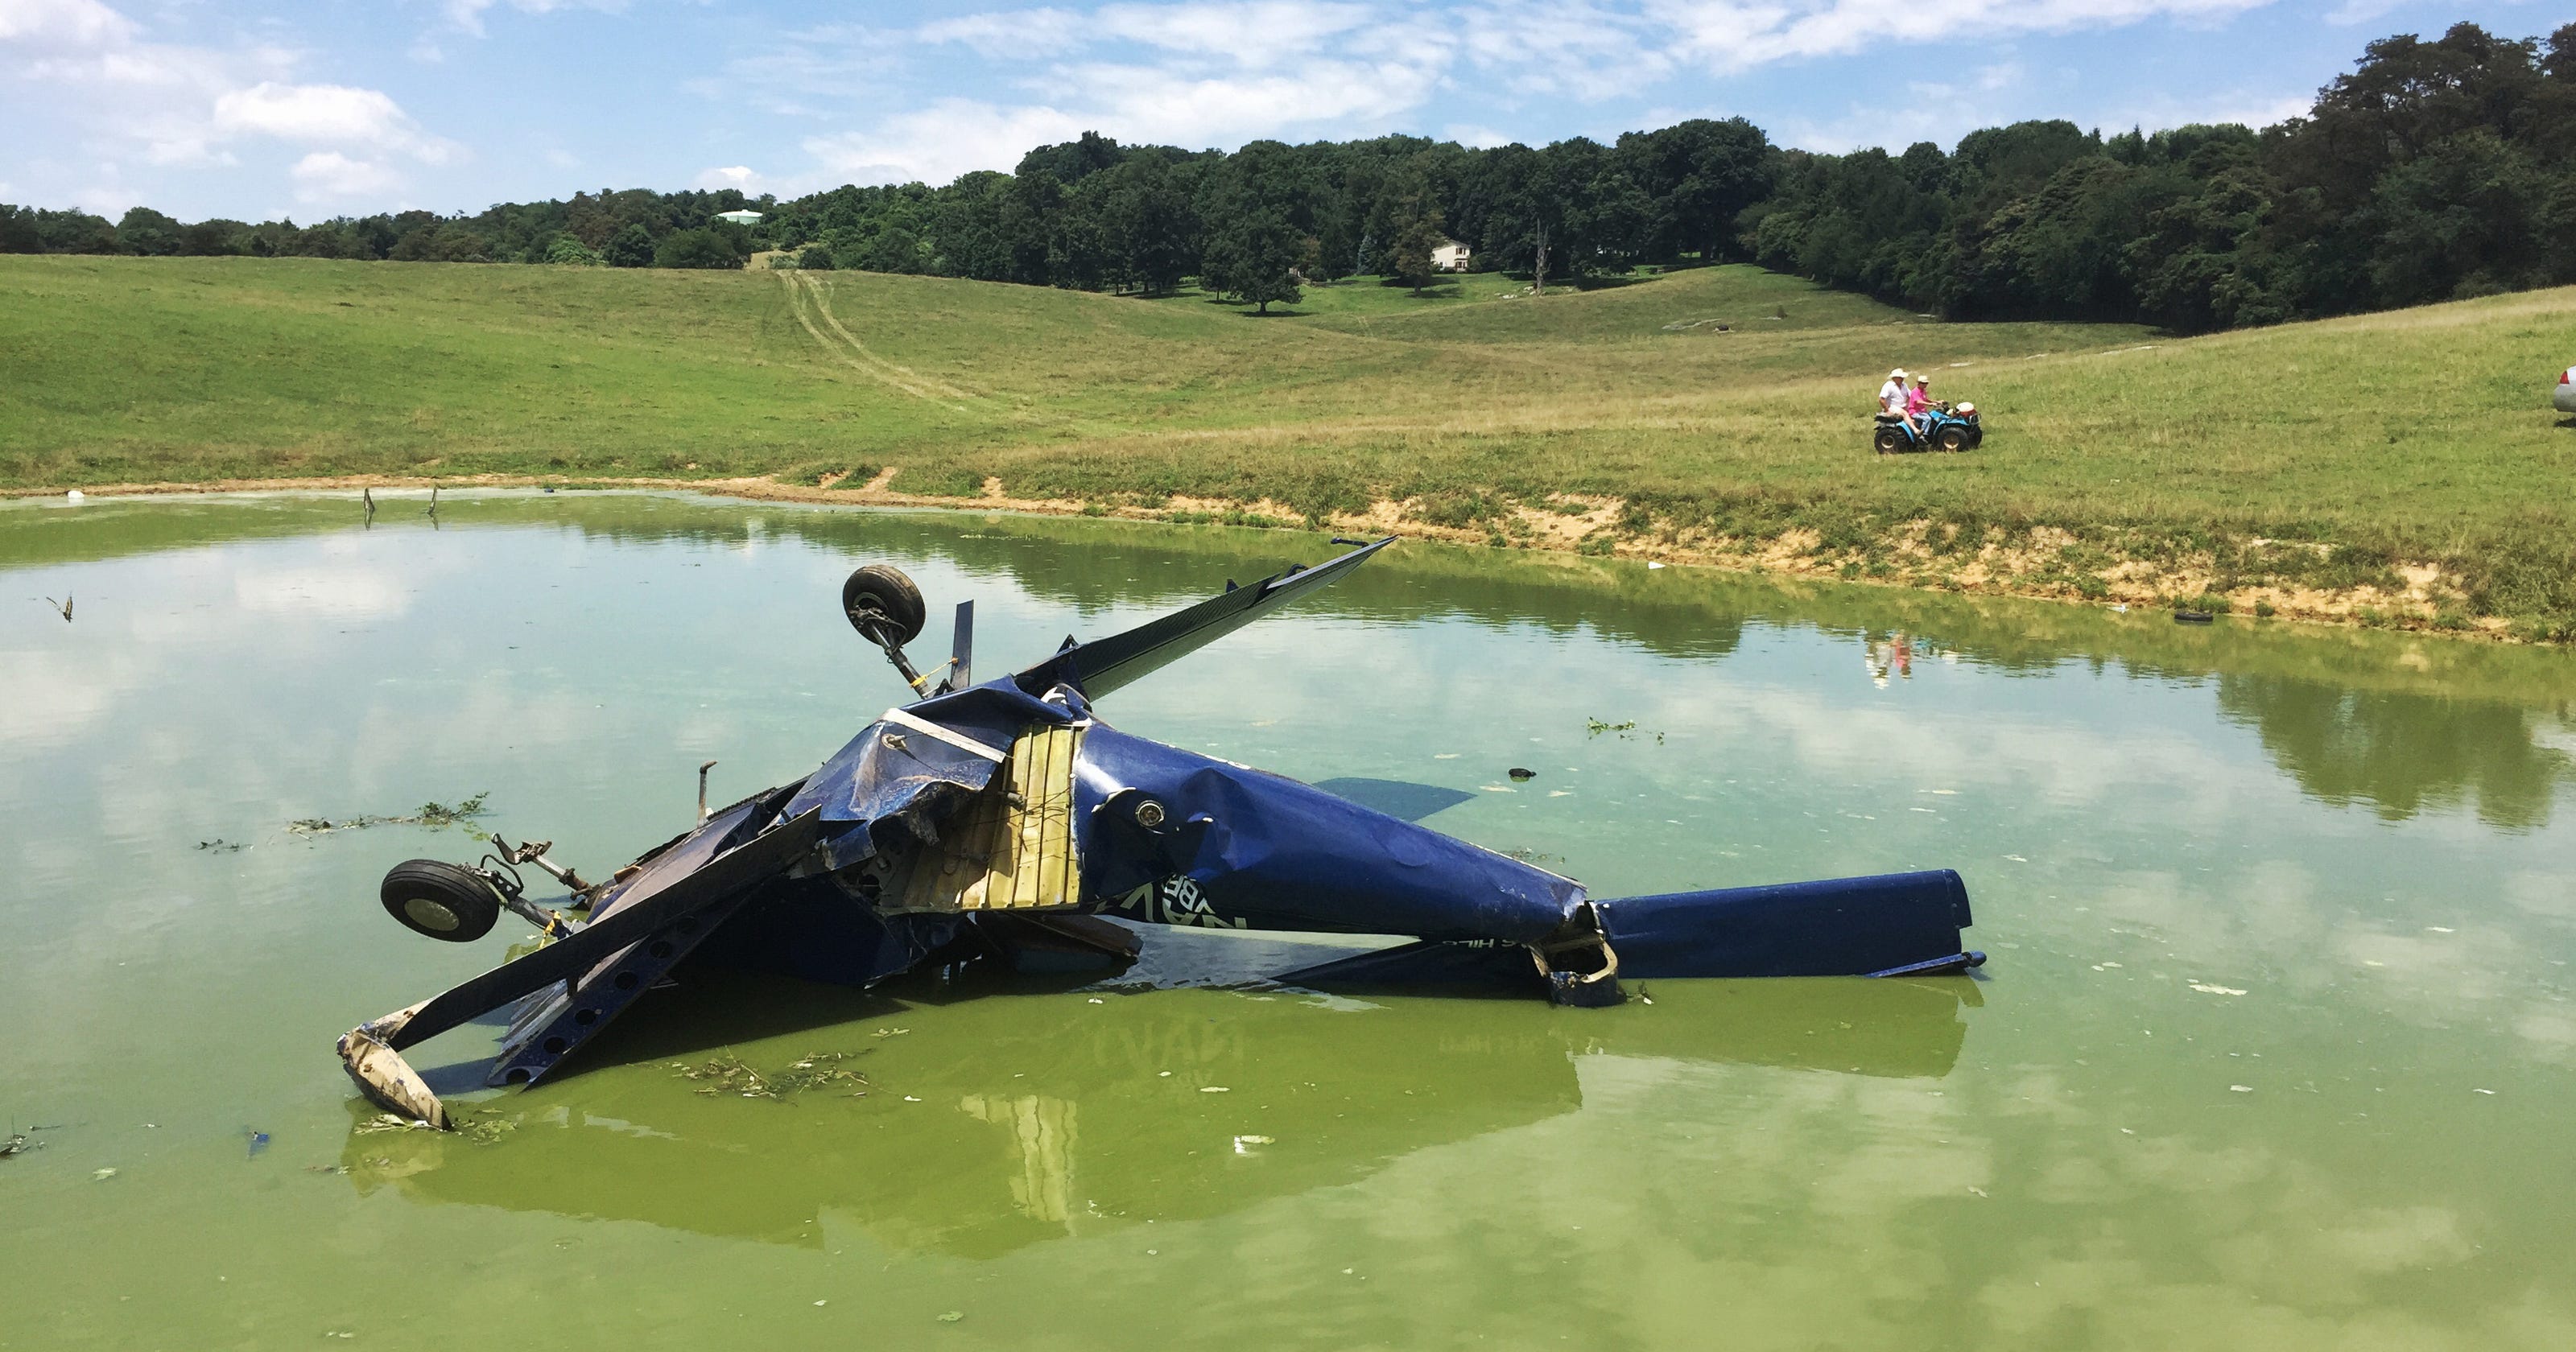 Two survive private plane crash in Waynesboro